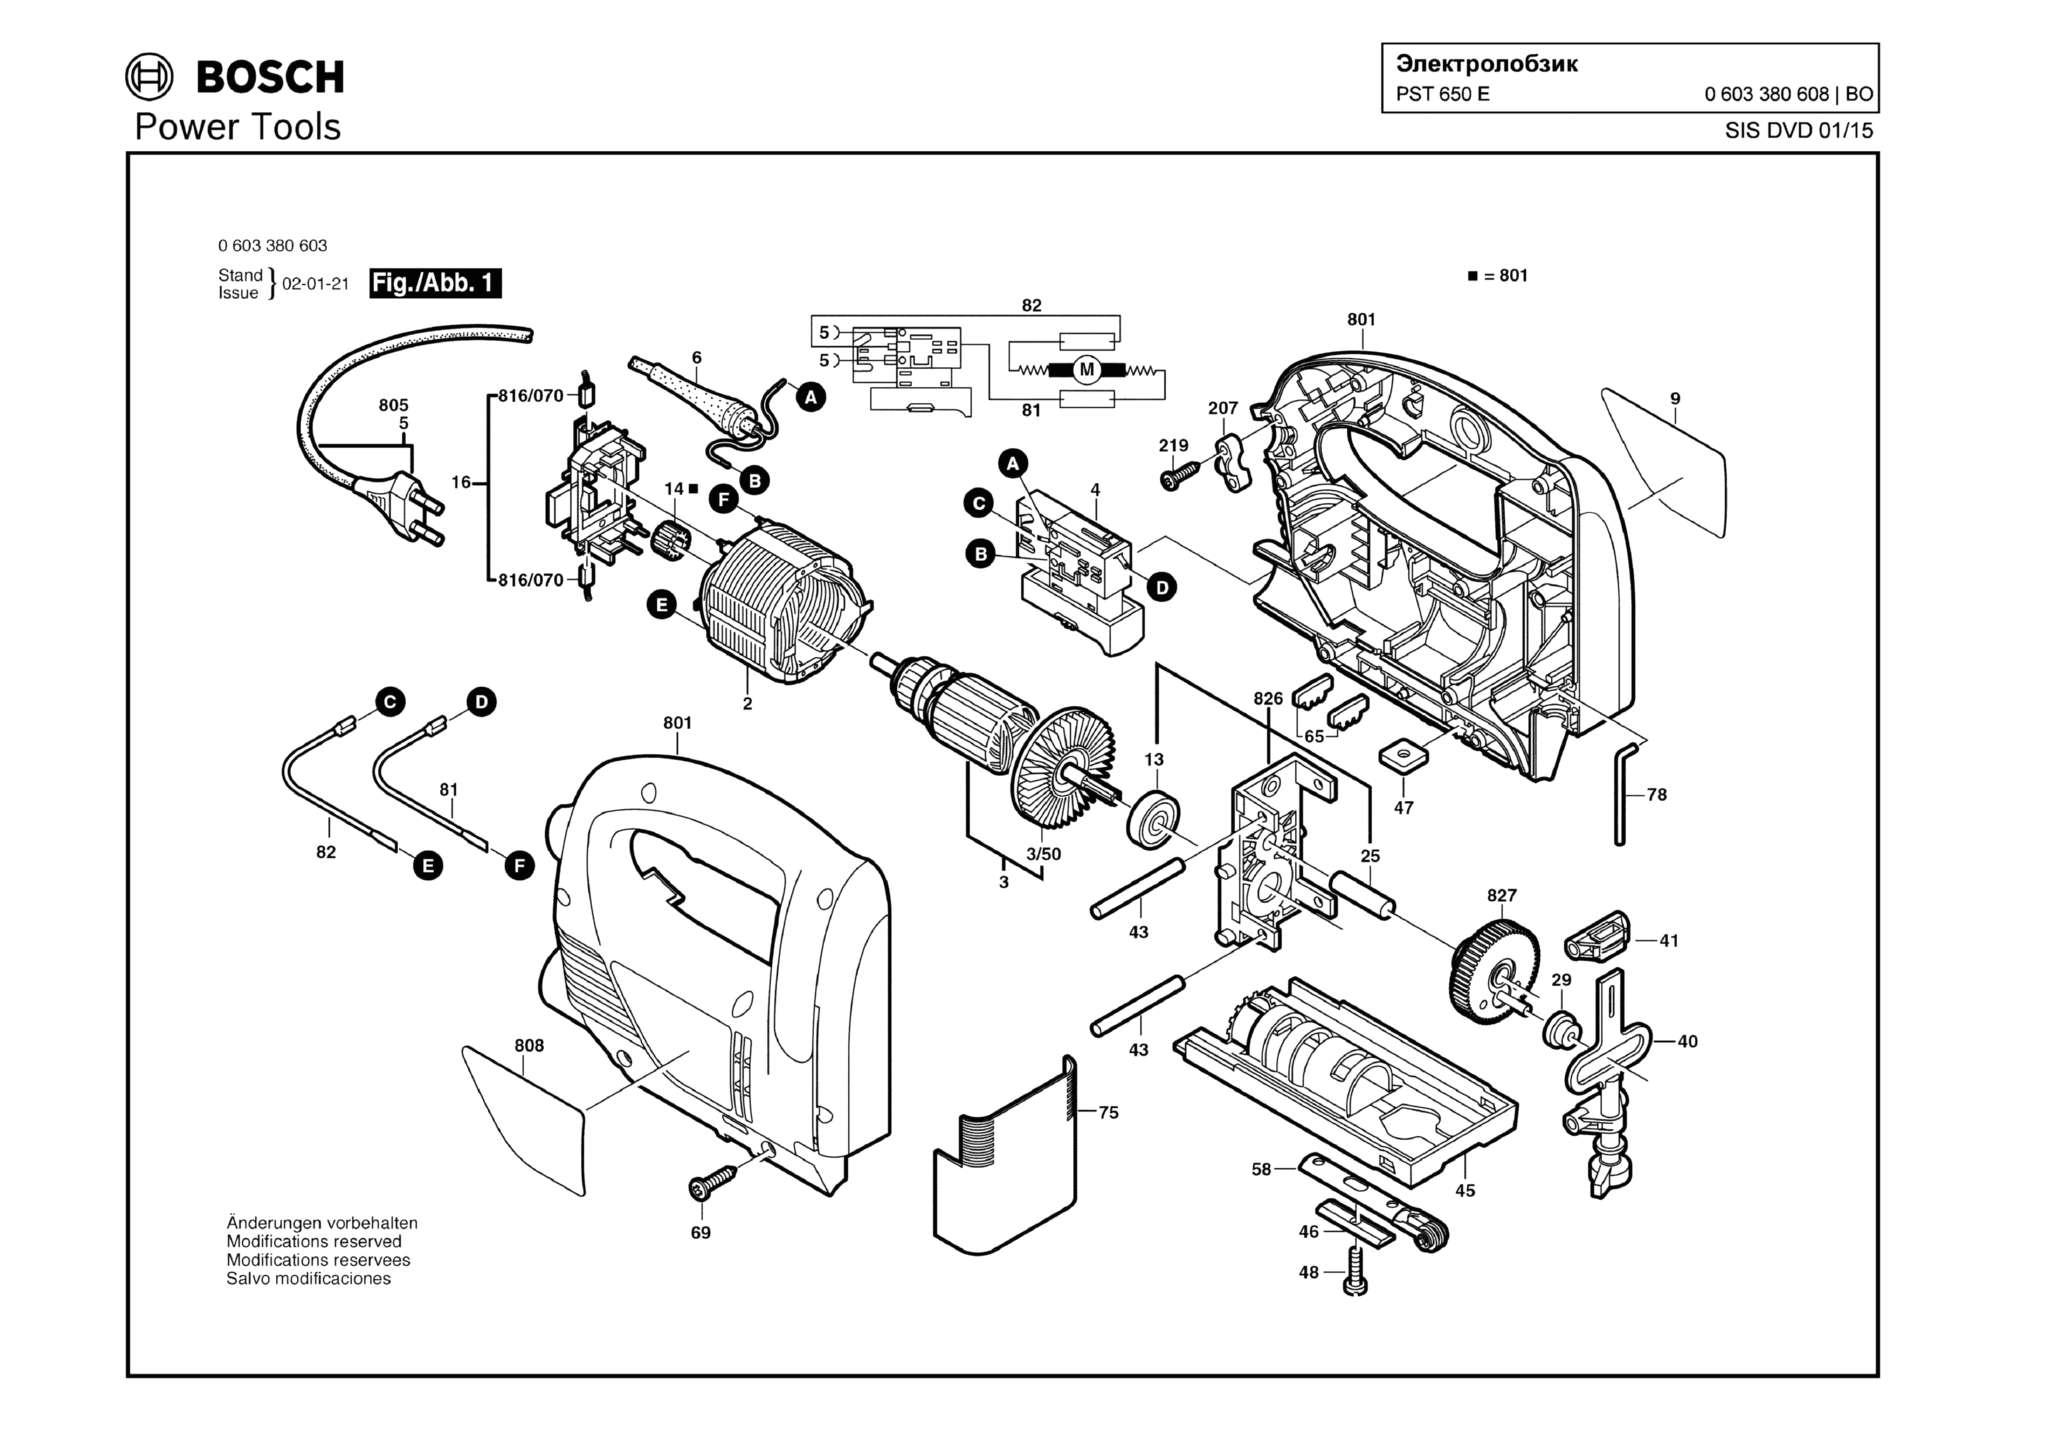 Запчасти, схема и деталировка Bosch PST 650 E (ТИП 0603380608)